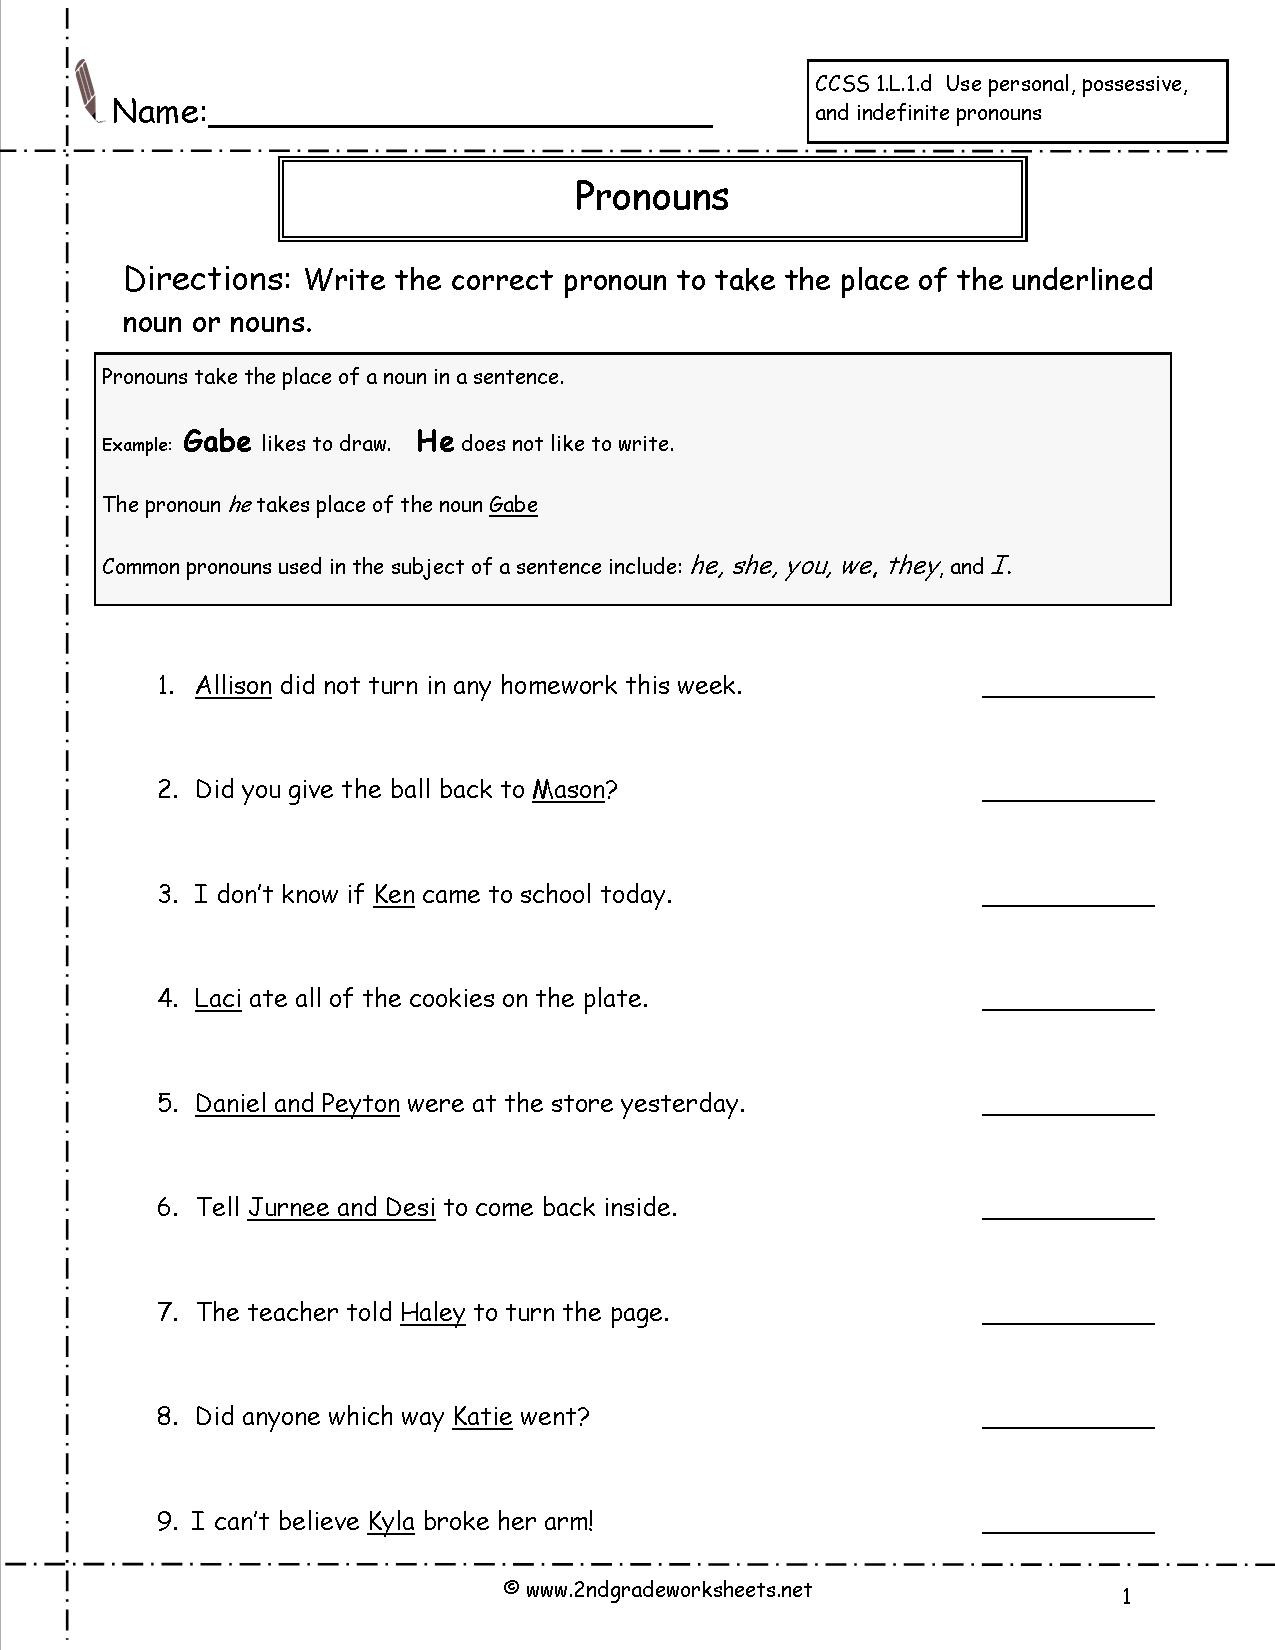 2nd Grade Pronoun Worksheets Pronouns Worksheets 2nd Grade